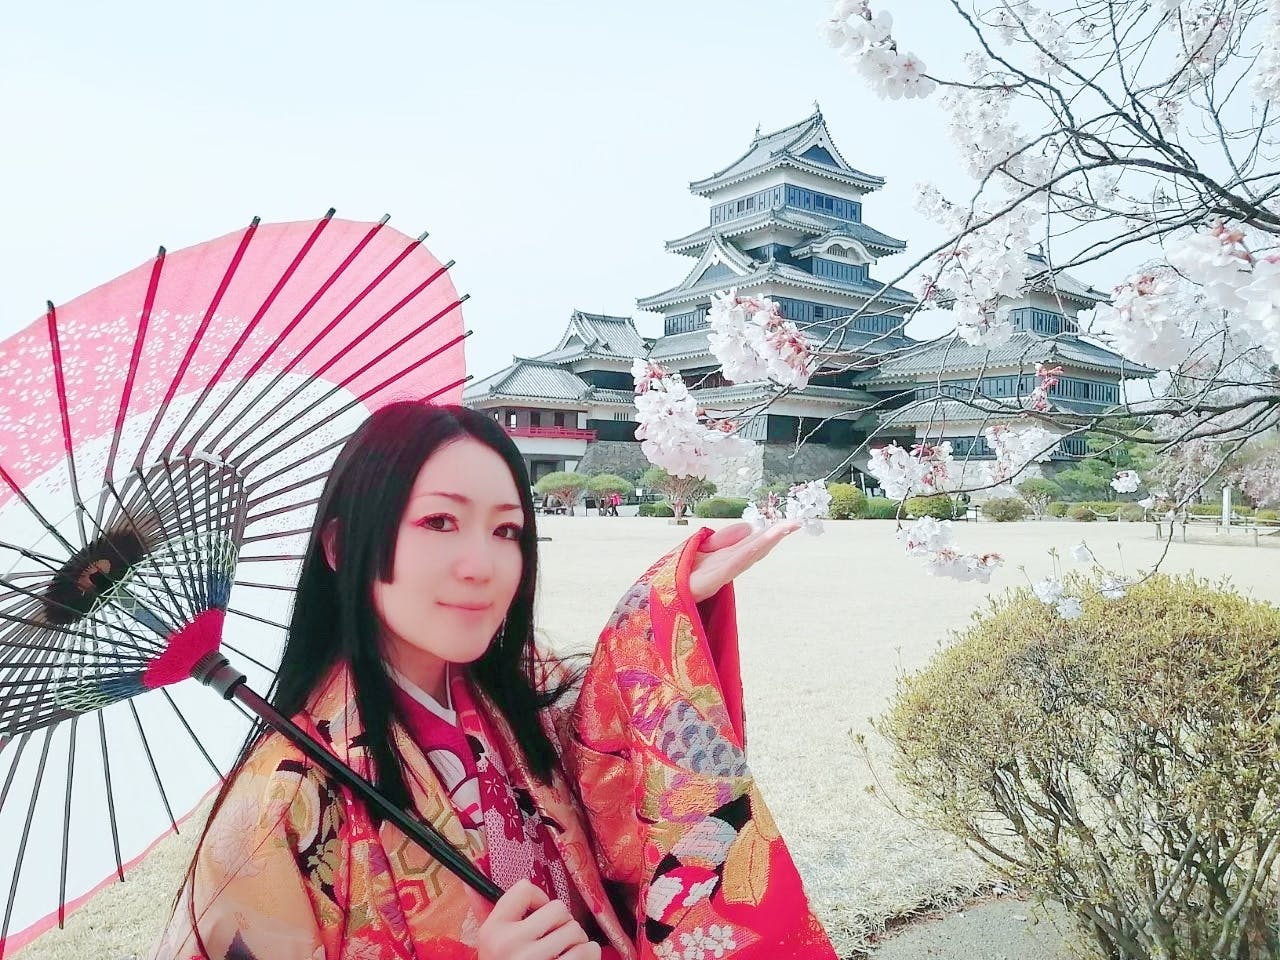 松本城に貢献】松本城の姫が松本城公式の御城印帳を制作する